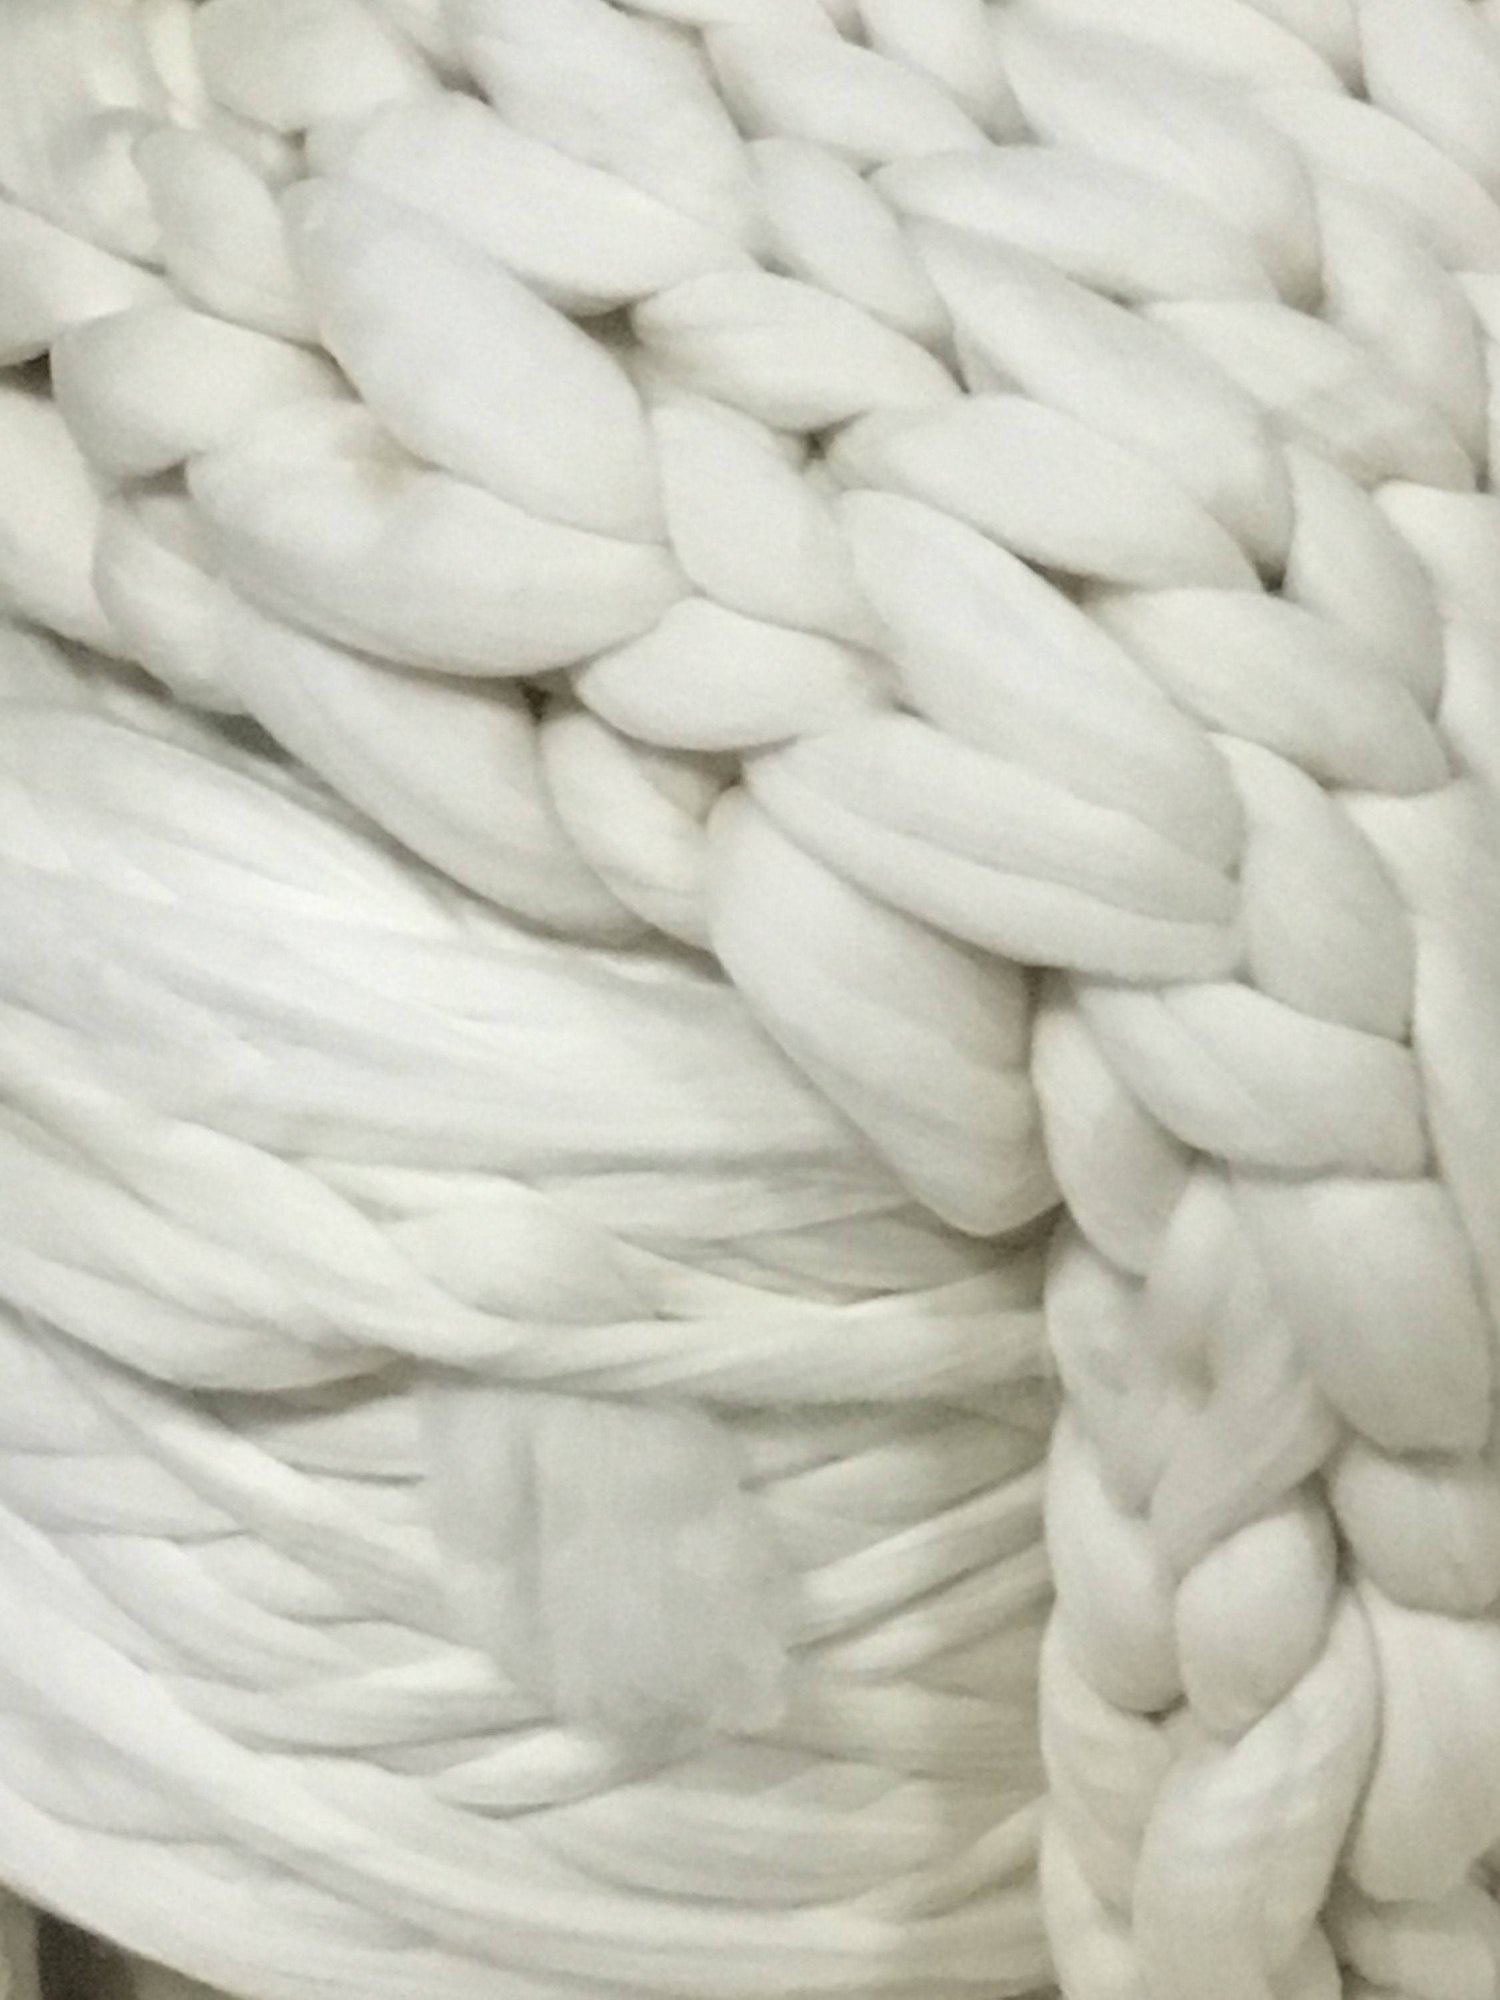 Wool Roving Top 8 Lbs Pounds White DIY Roving Fiber Spinning, Make